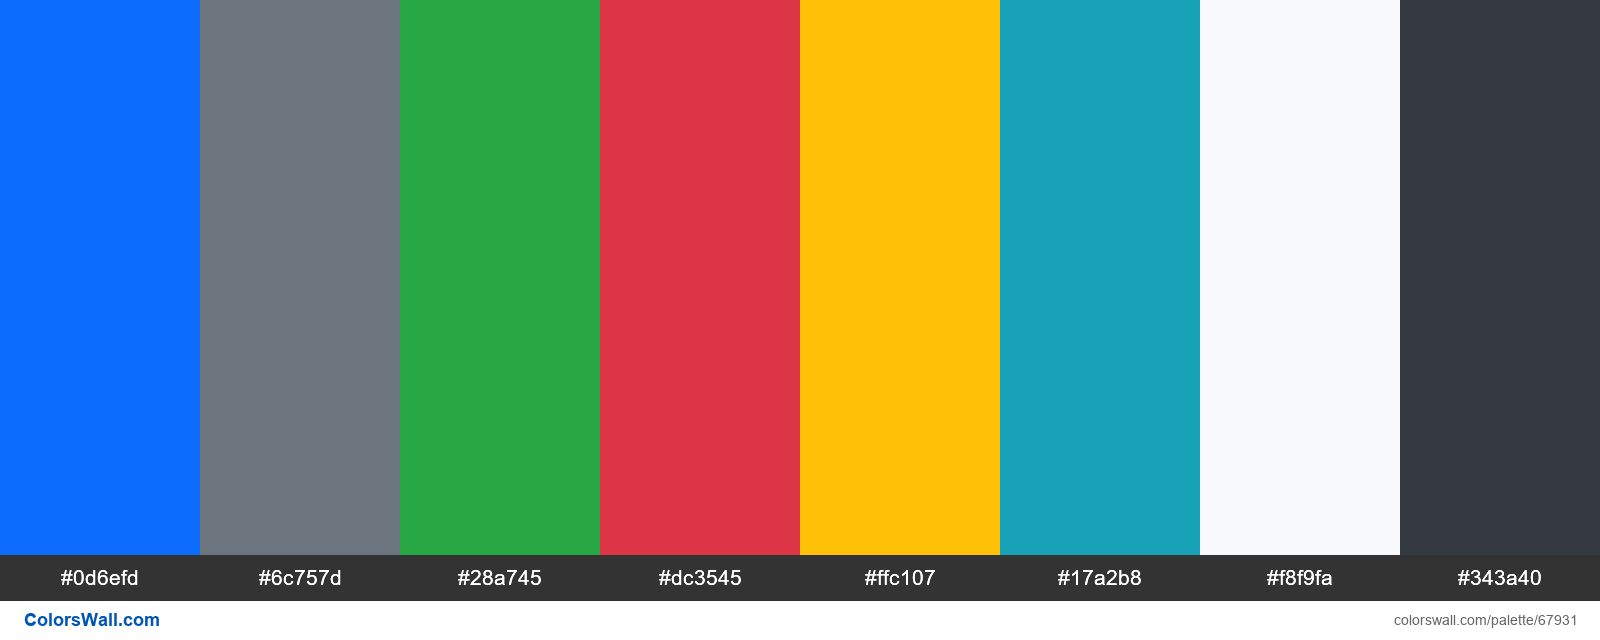 Bootstrap 5 màu sắc: Những màu sắc nhẹ nhàng, tươi sáng và tinh tế được Bootstrap 5 thiết kế cho website của bạn. Bạn sẽ không phải lo lắng về việc chọn màu sắc phù hợp cho website của mình nữa vì Bootstrap 5 đã giải quyết tất cả những vấn đề đó. Hãy xem những hình ảnh liên quan để tìm hiểu thêm về Bootstrap 5 và màu sắc tuyệt vời của nó.